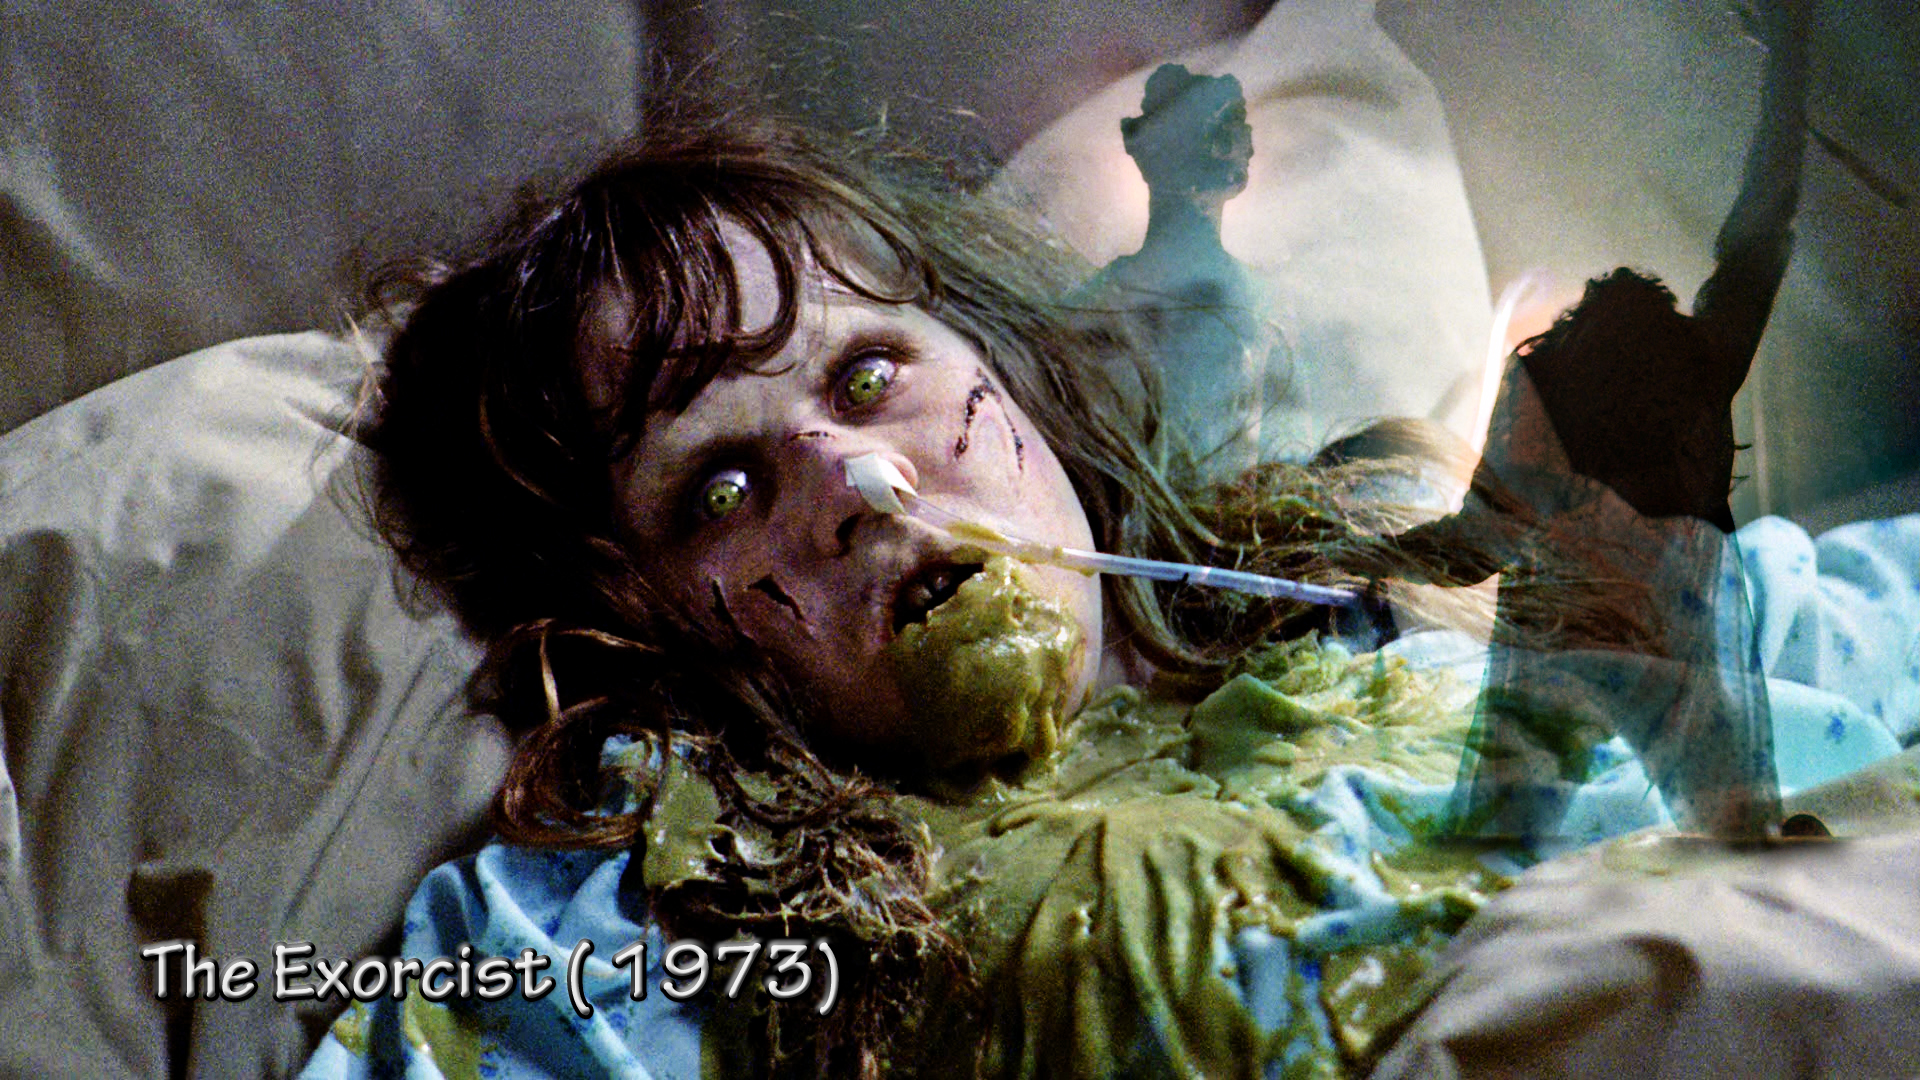 the exorcist full movie 1973